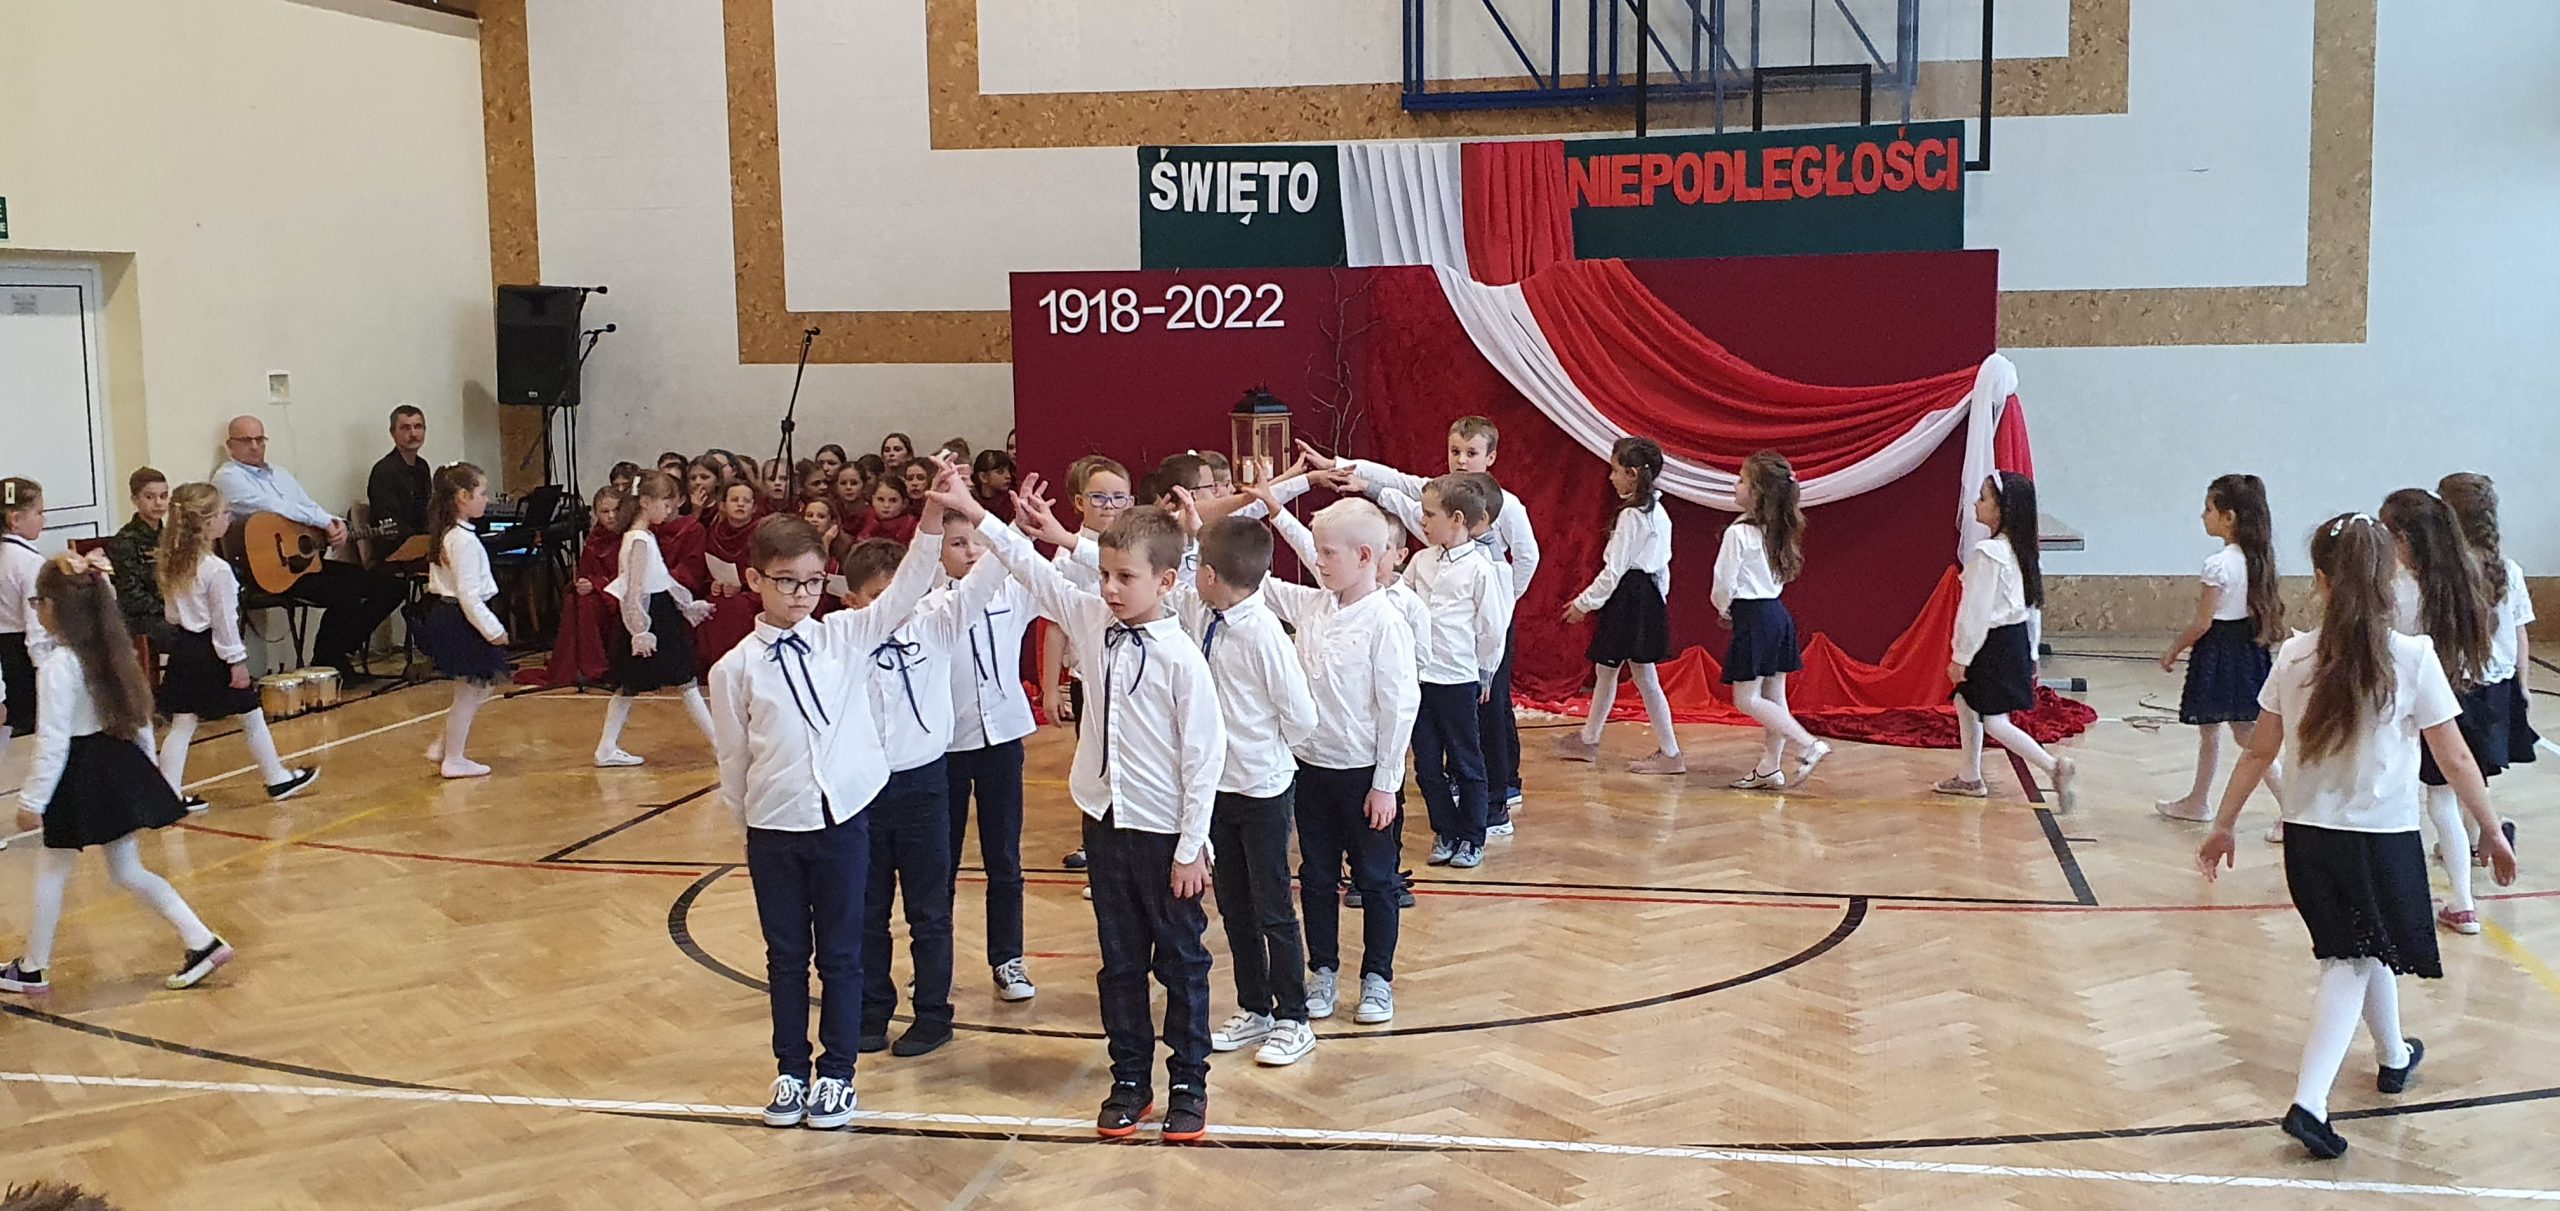 Grupa dzieci ubranych w odświętne stroje, białe koszule i ciemne spódnice, spodnie tancza poloneza na sali gimnastycznej.